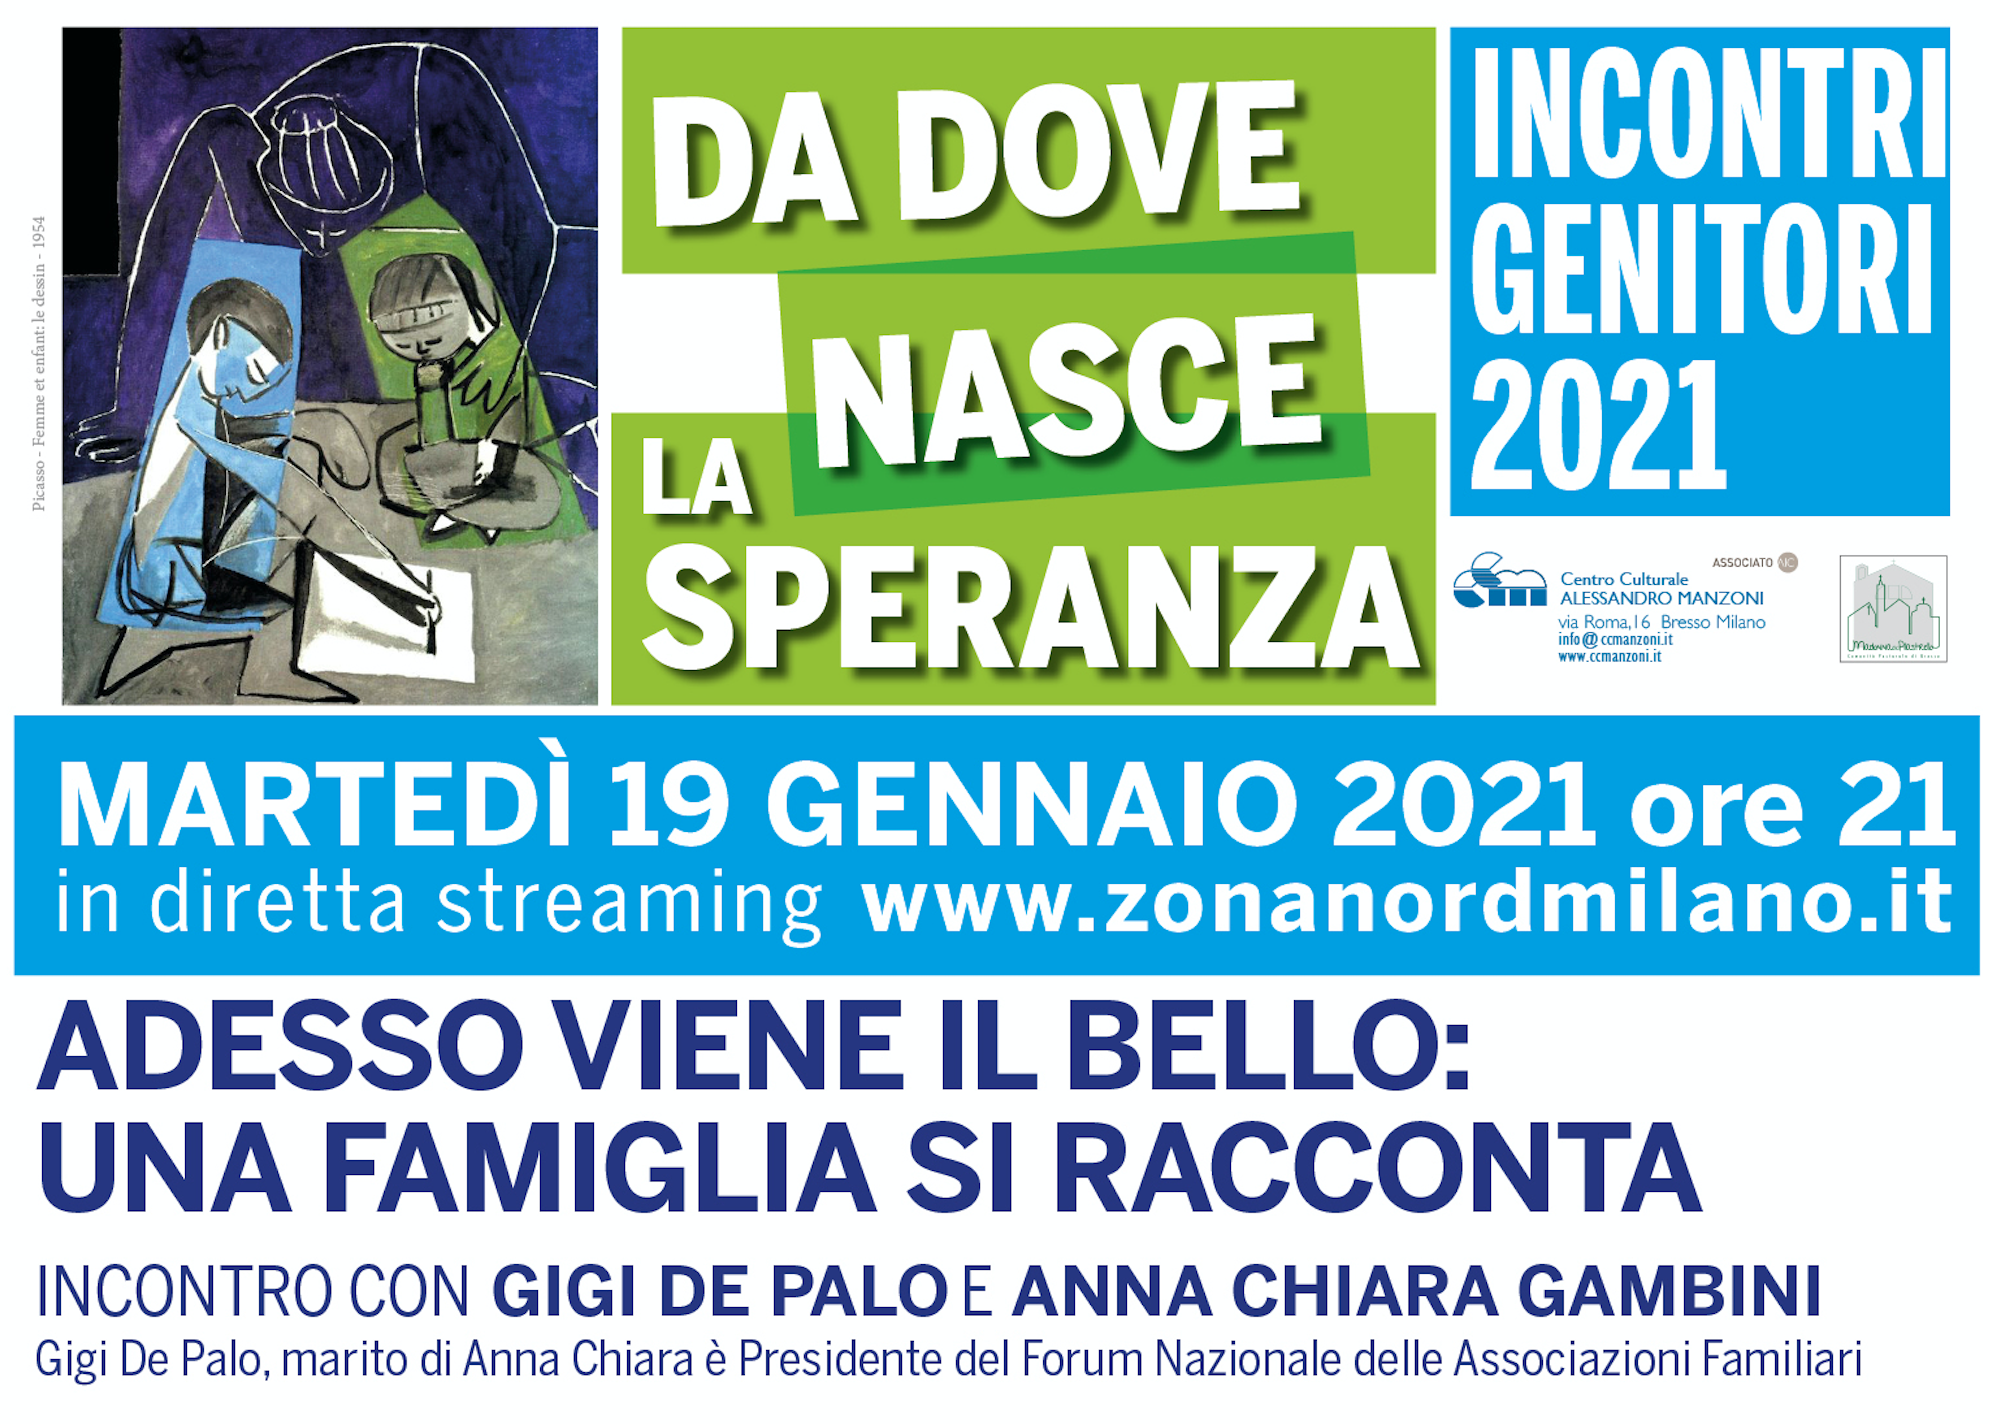 Featured image for “Bresso (Mi): Incontri genitori 2021”